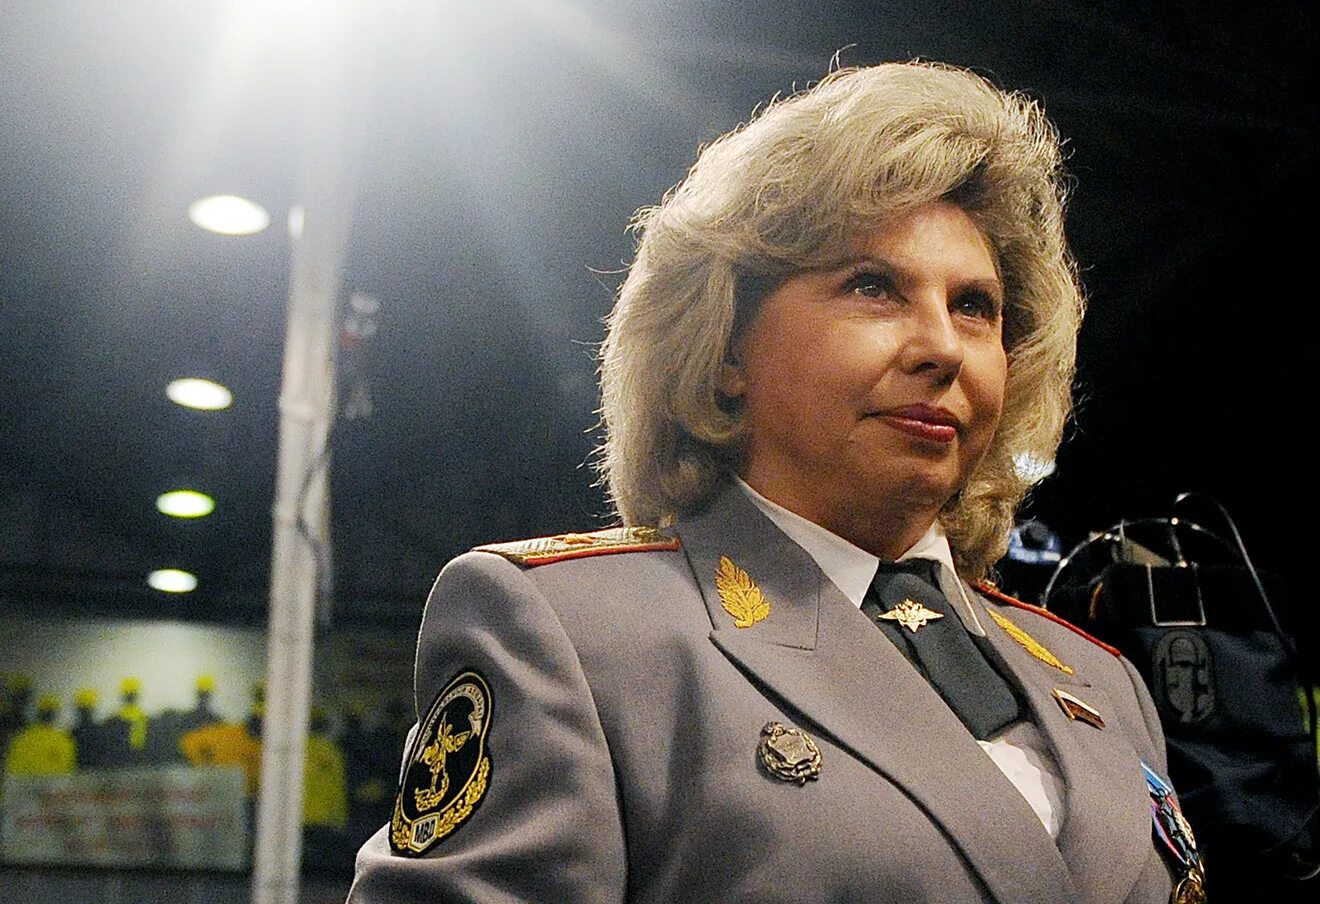 Женщины генералы мвд россии